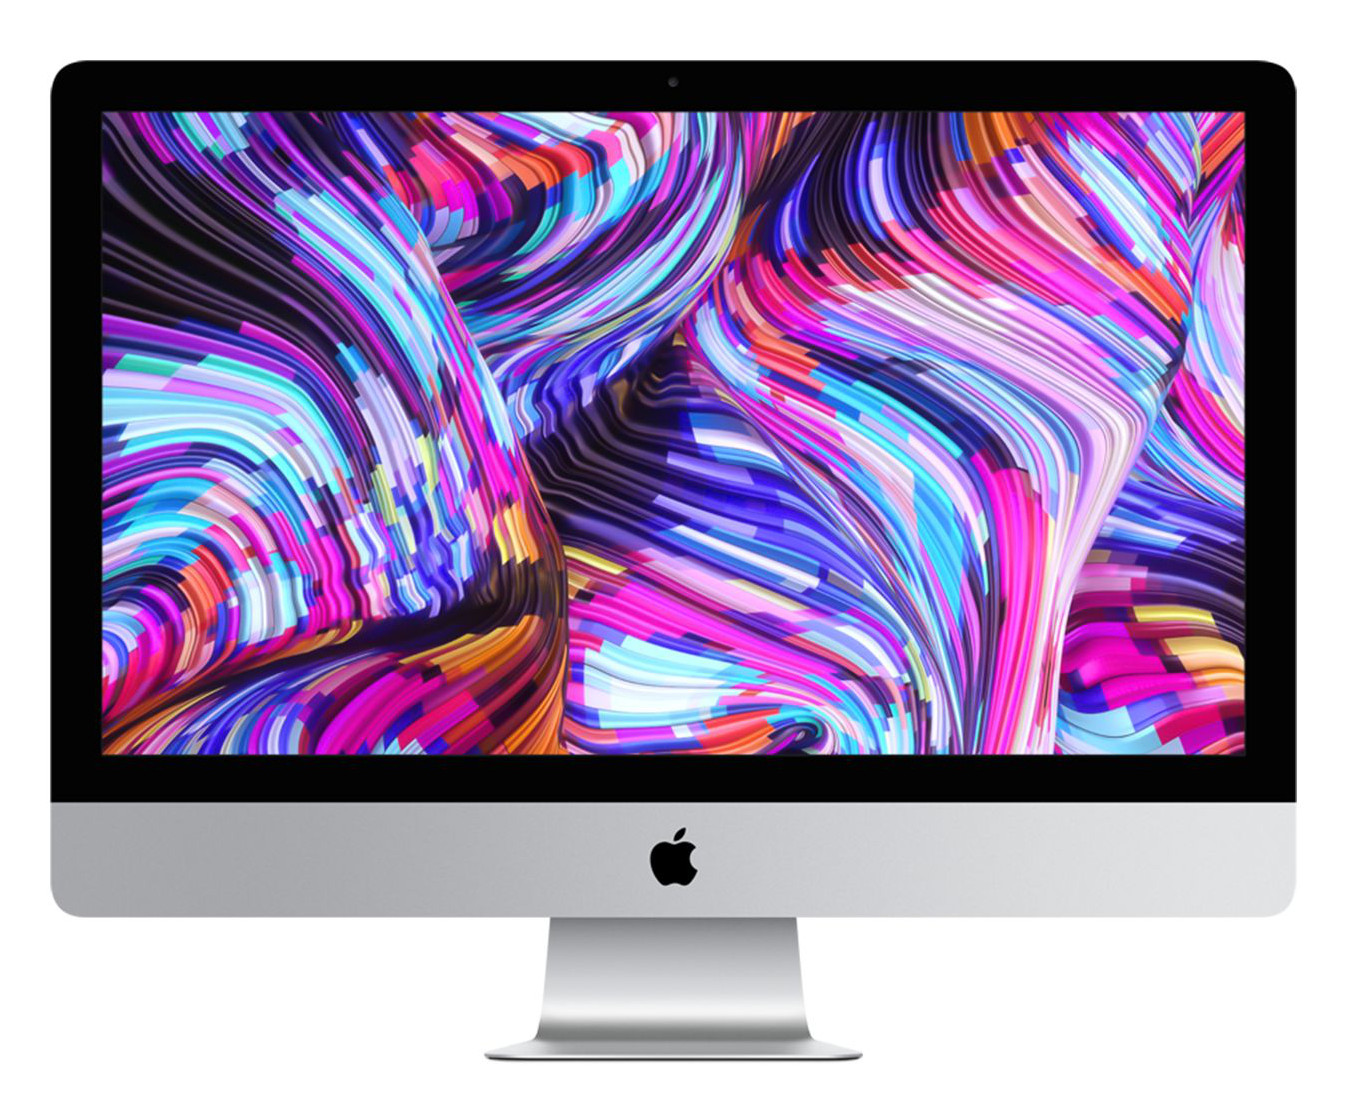 L’Apple iMac 27 pouces Retina (Core i5) à 1850 €